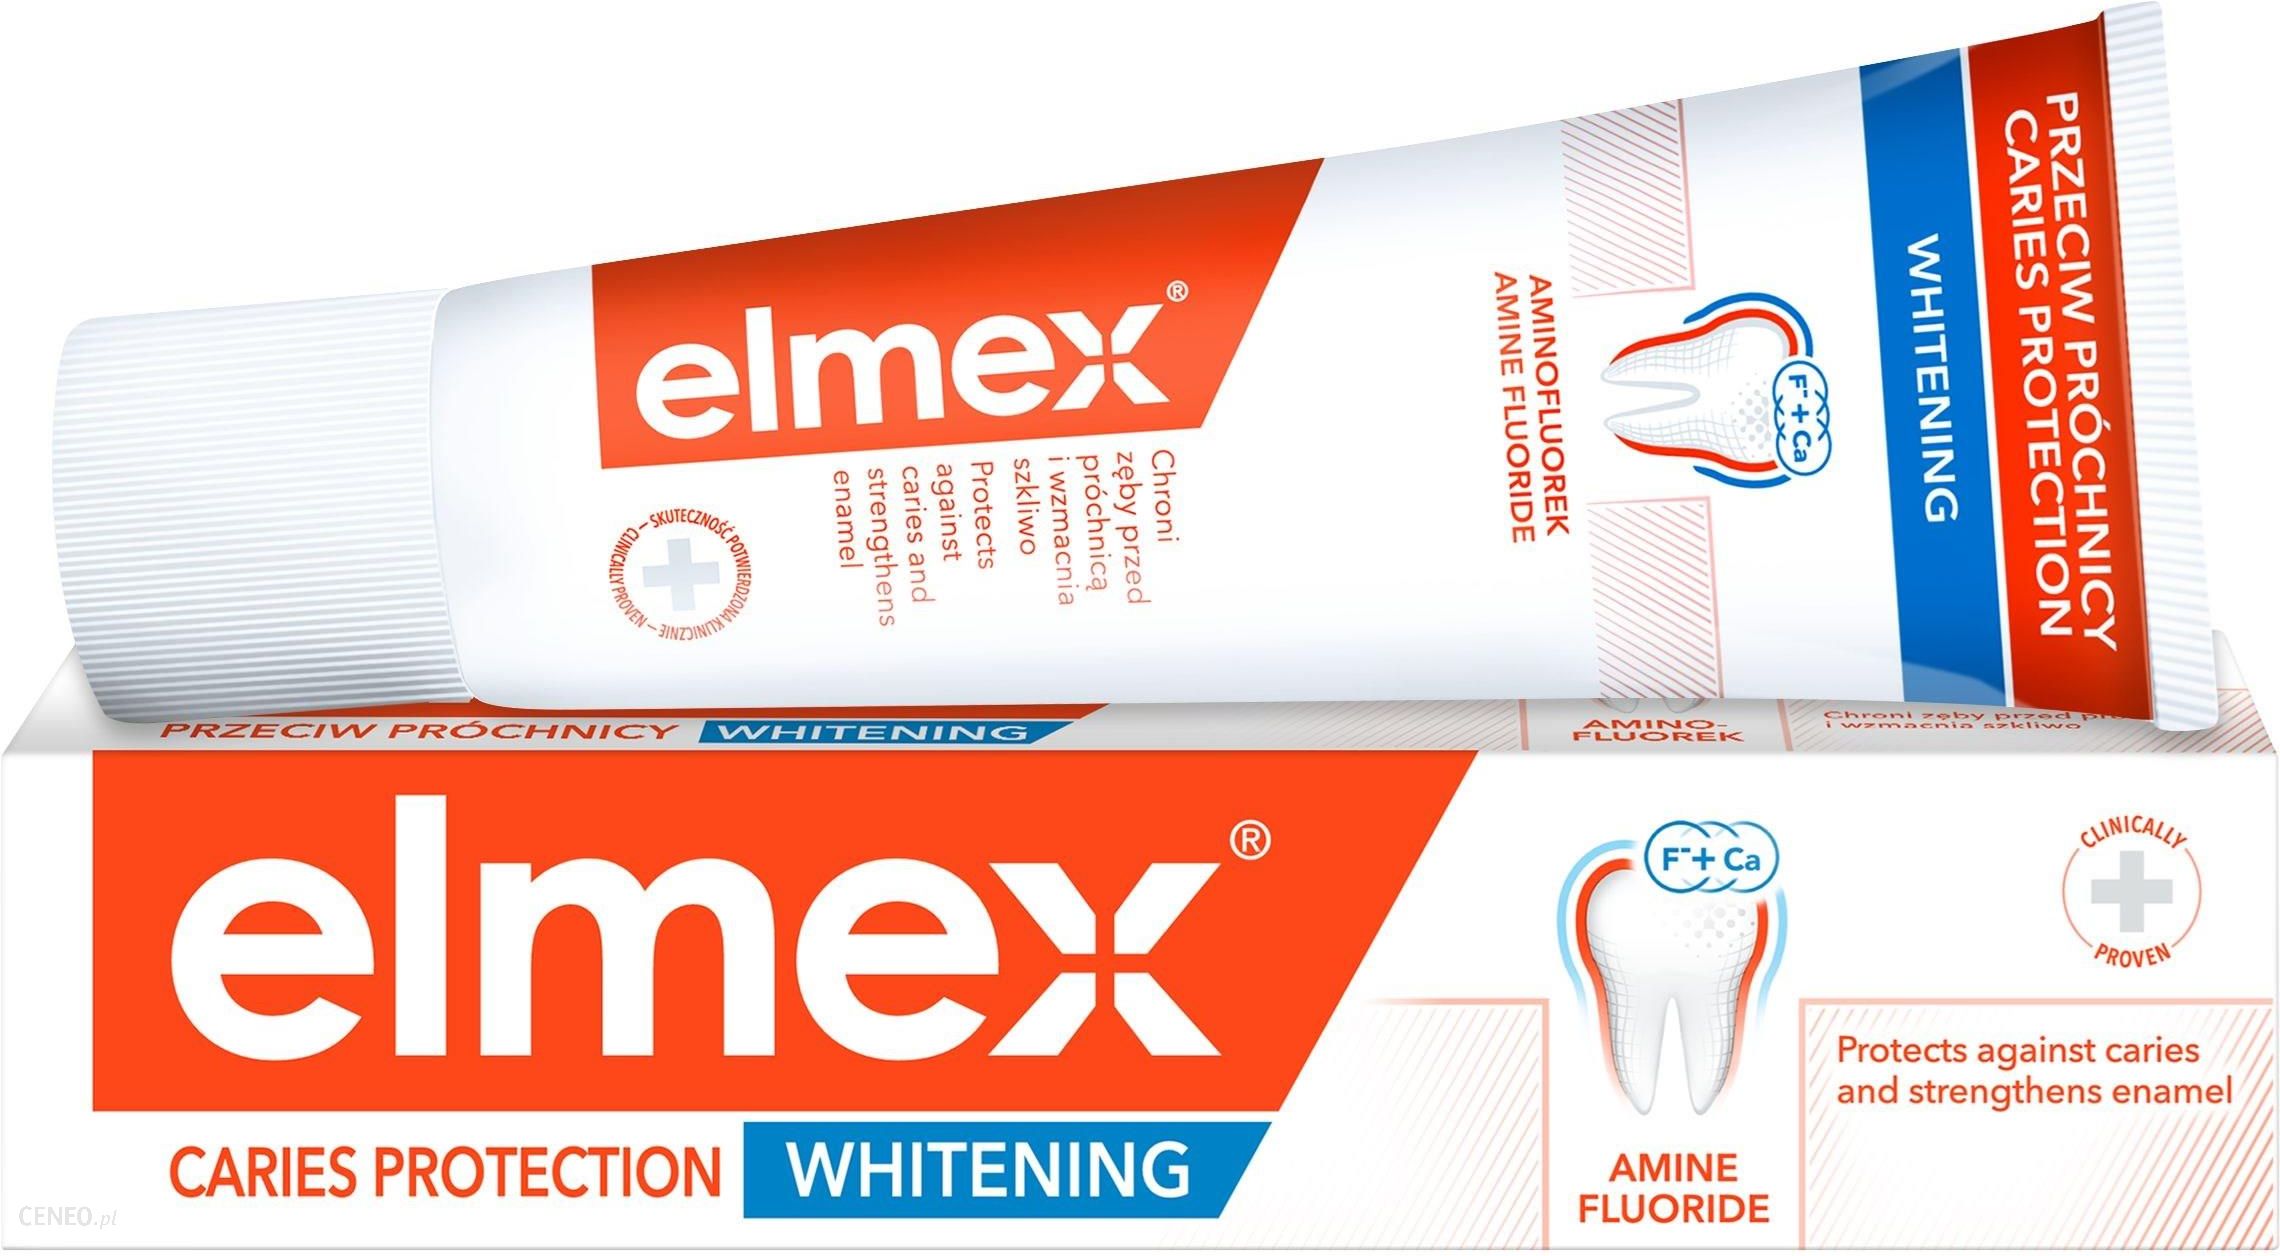 elmex Przeciw Próchnicy Whitening delikatnie wybielająca pasta do zębów przeciw próchnicy z aminofluorkiem 75 ml